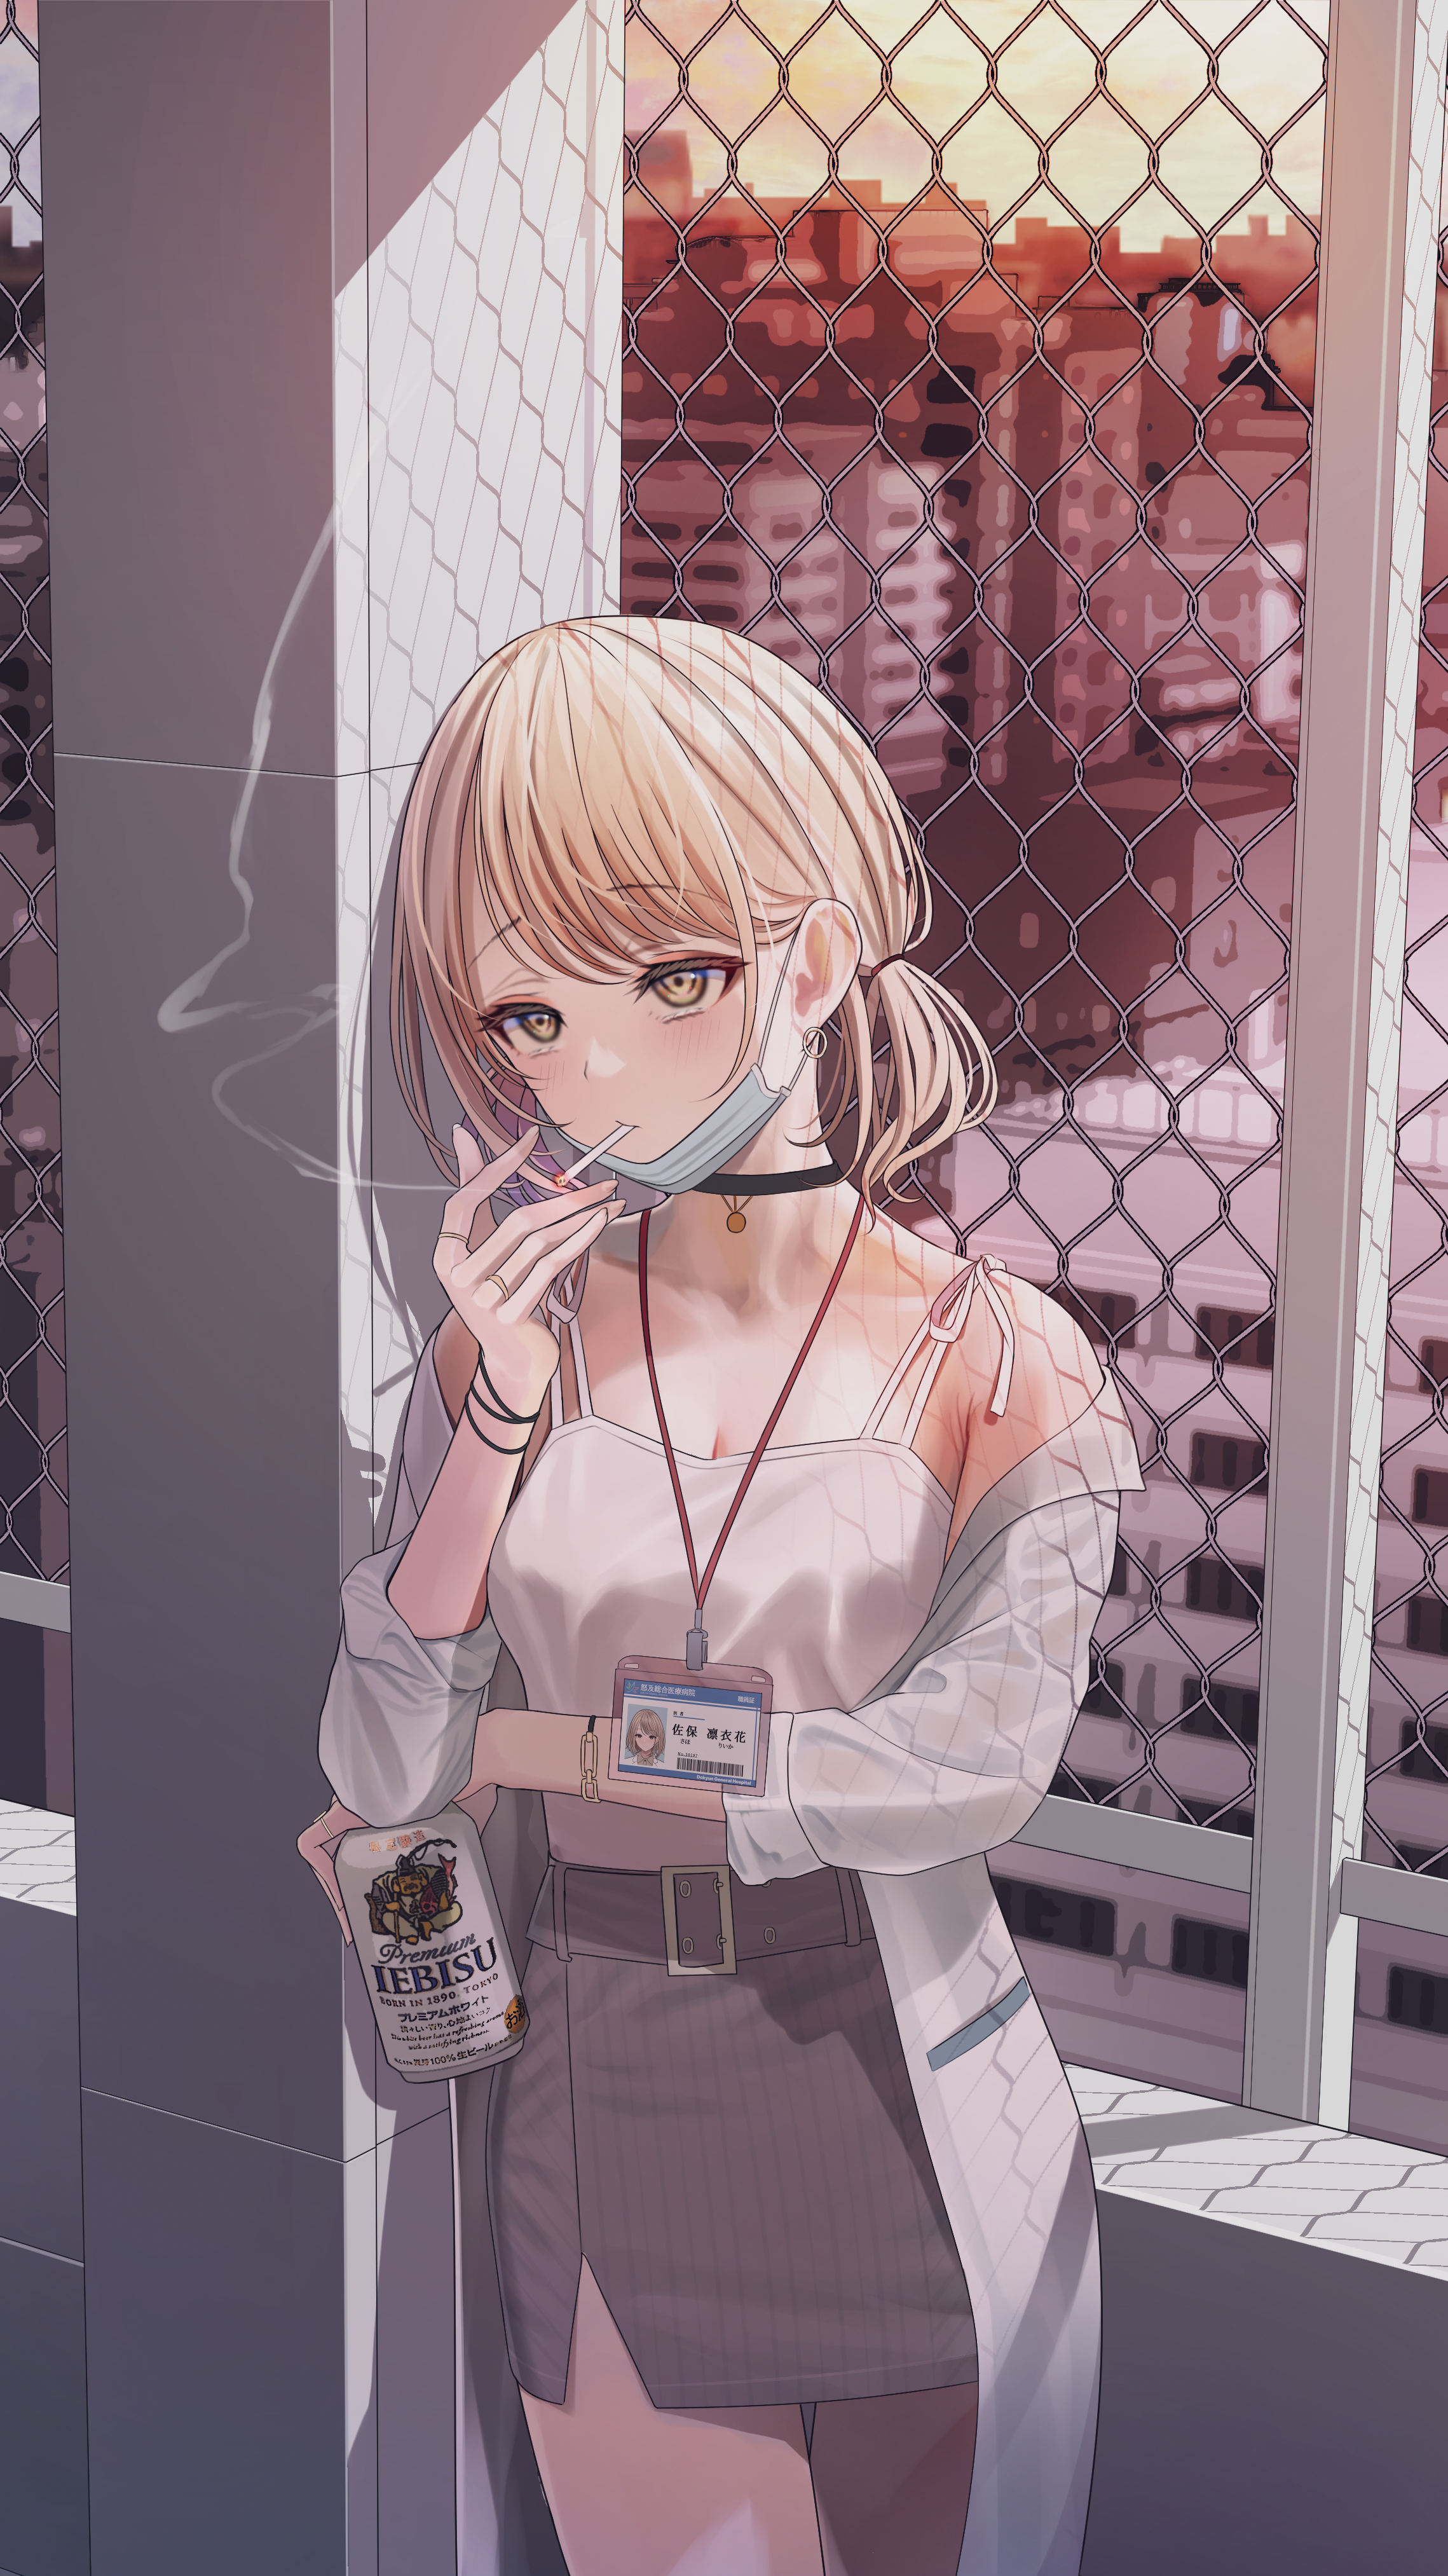 Anime Anime Girls Blonde Yellow Eyes Smoking Cigarettes Mask Beer 2278x4052